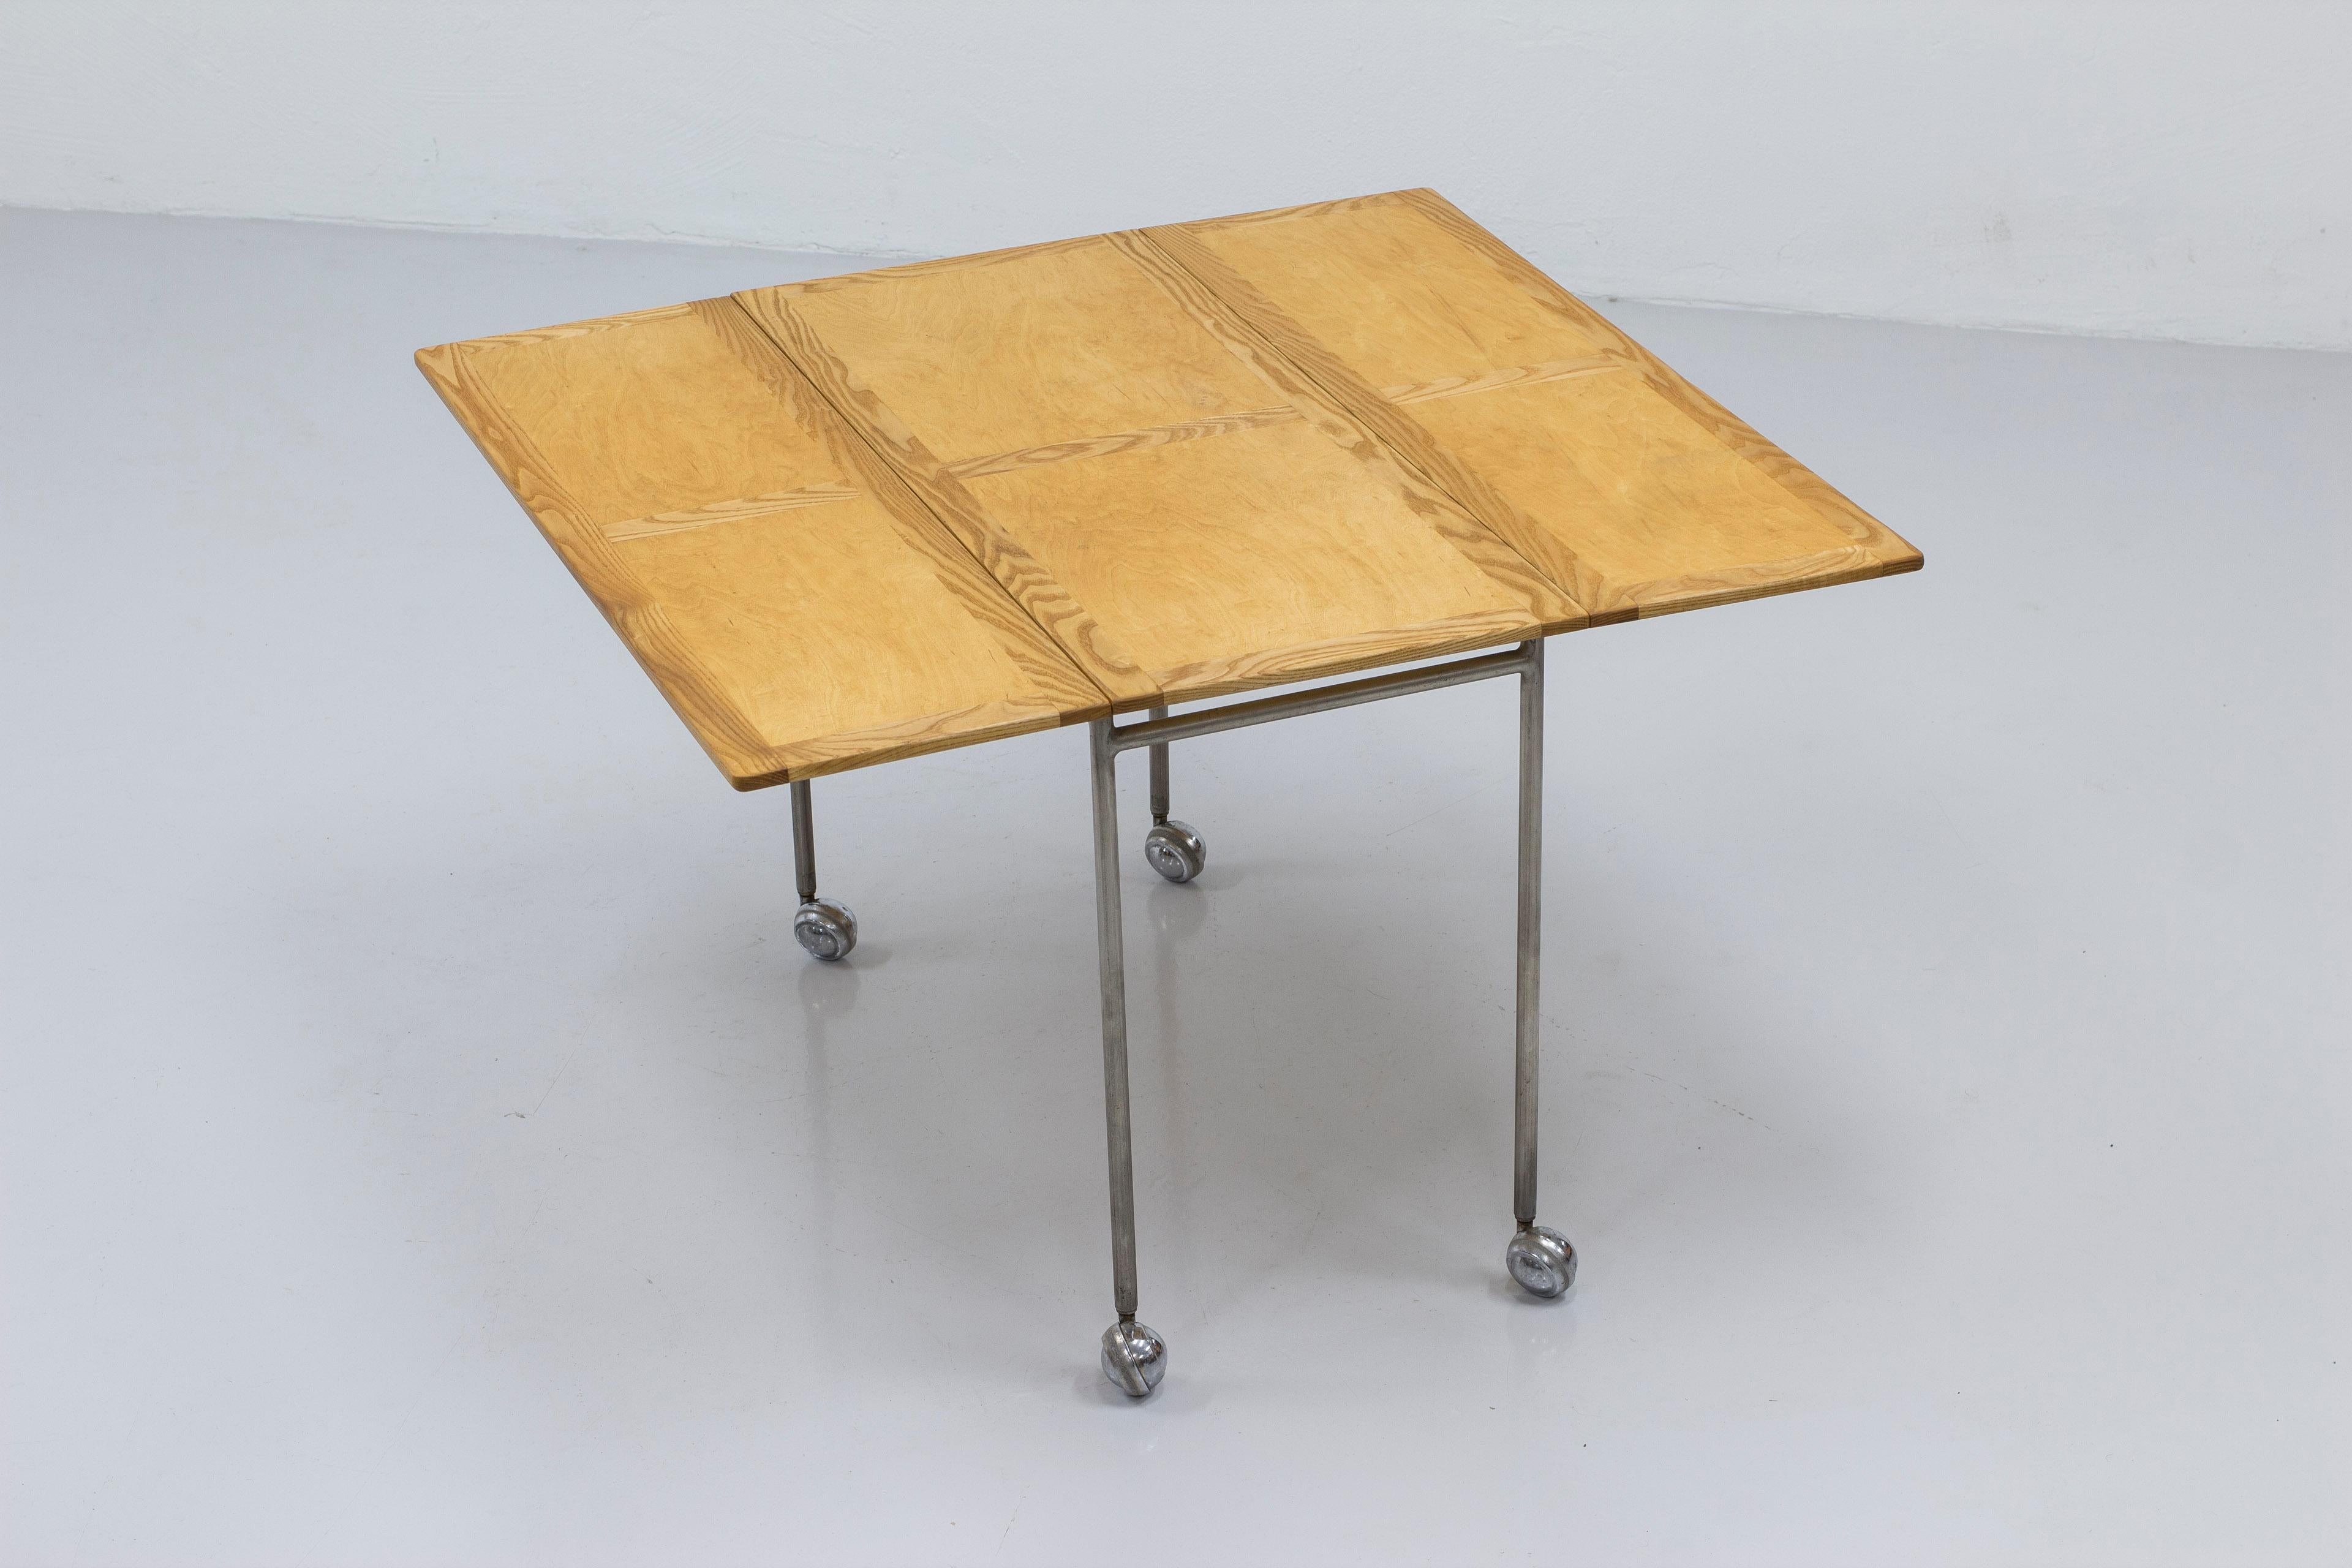 Table d'appoint à rallonge modèle Berit conçu par Bruno Mathsson. Produit par Firma Karl Mathsson à Värnamo en Suède dans les années 1950. Piétement en acier sur roulettes avec un plateau en frêne et bouleau au très beau grain contrasté. La table